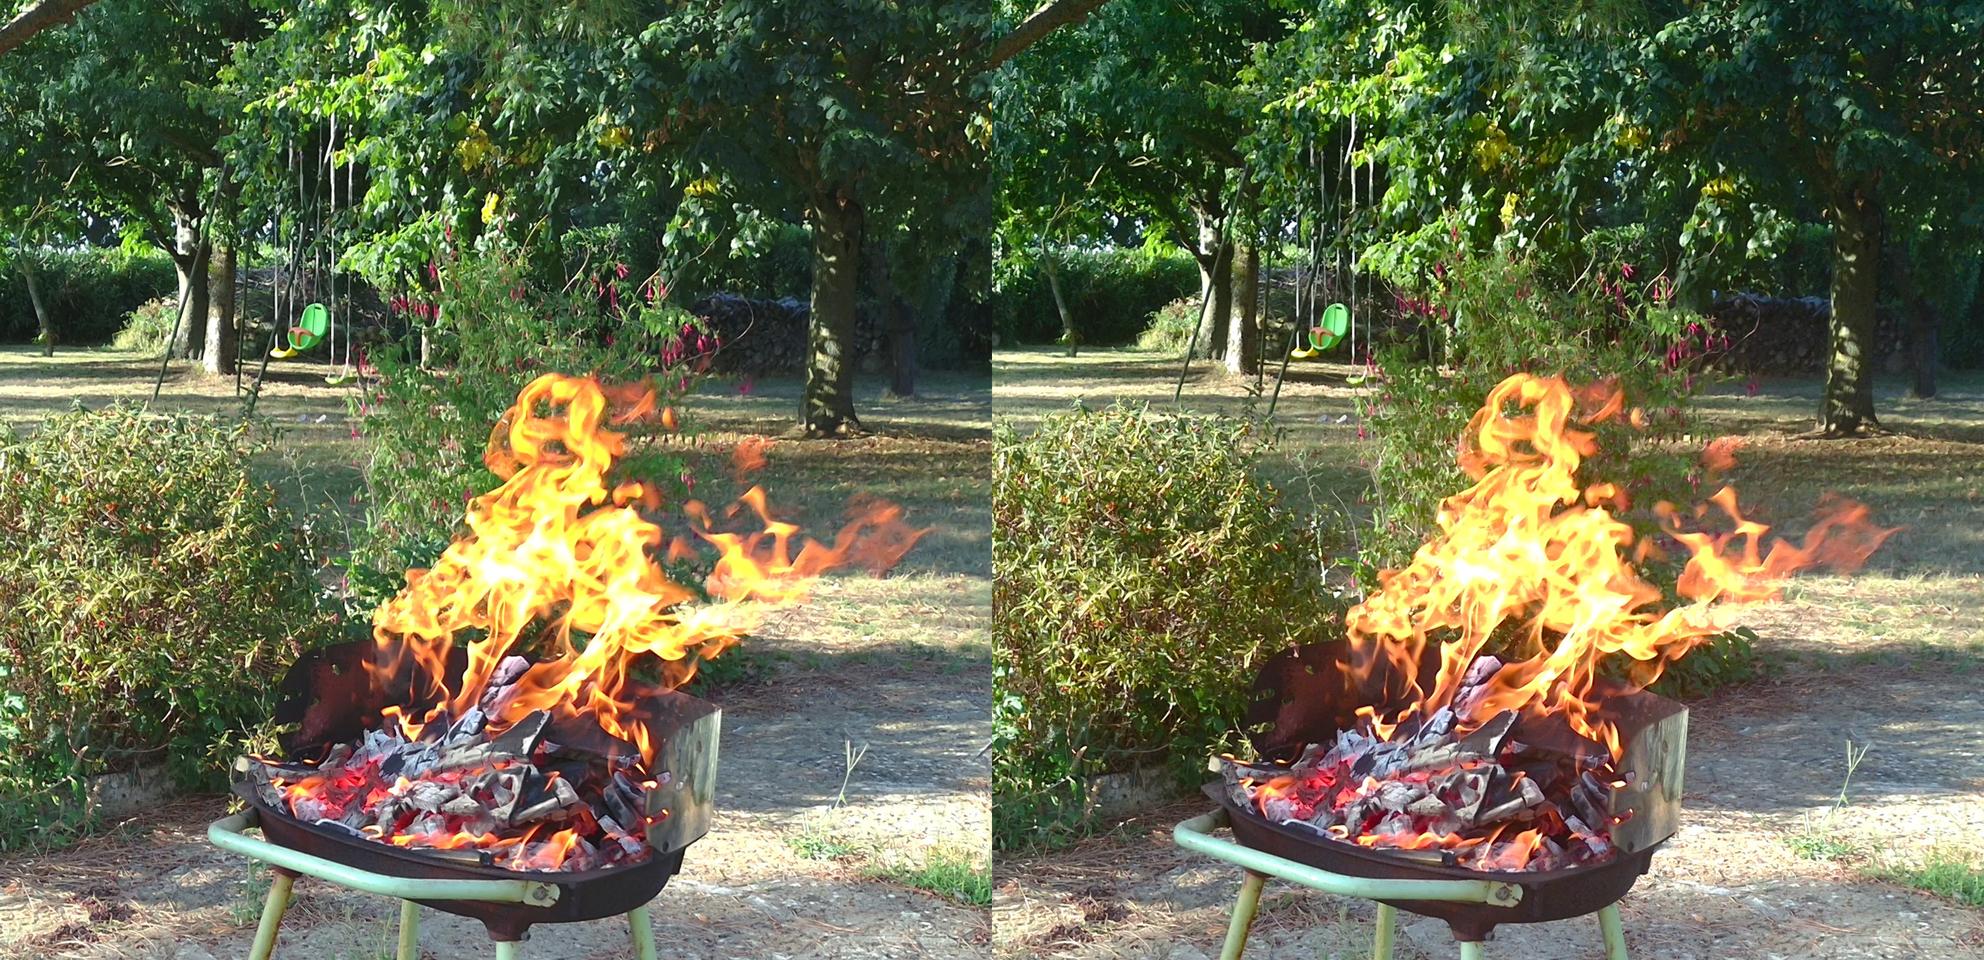 Barbecue fire sync